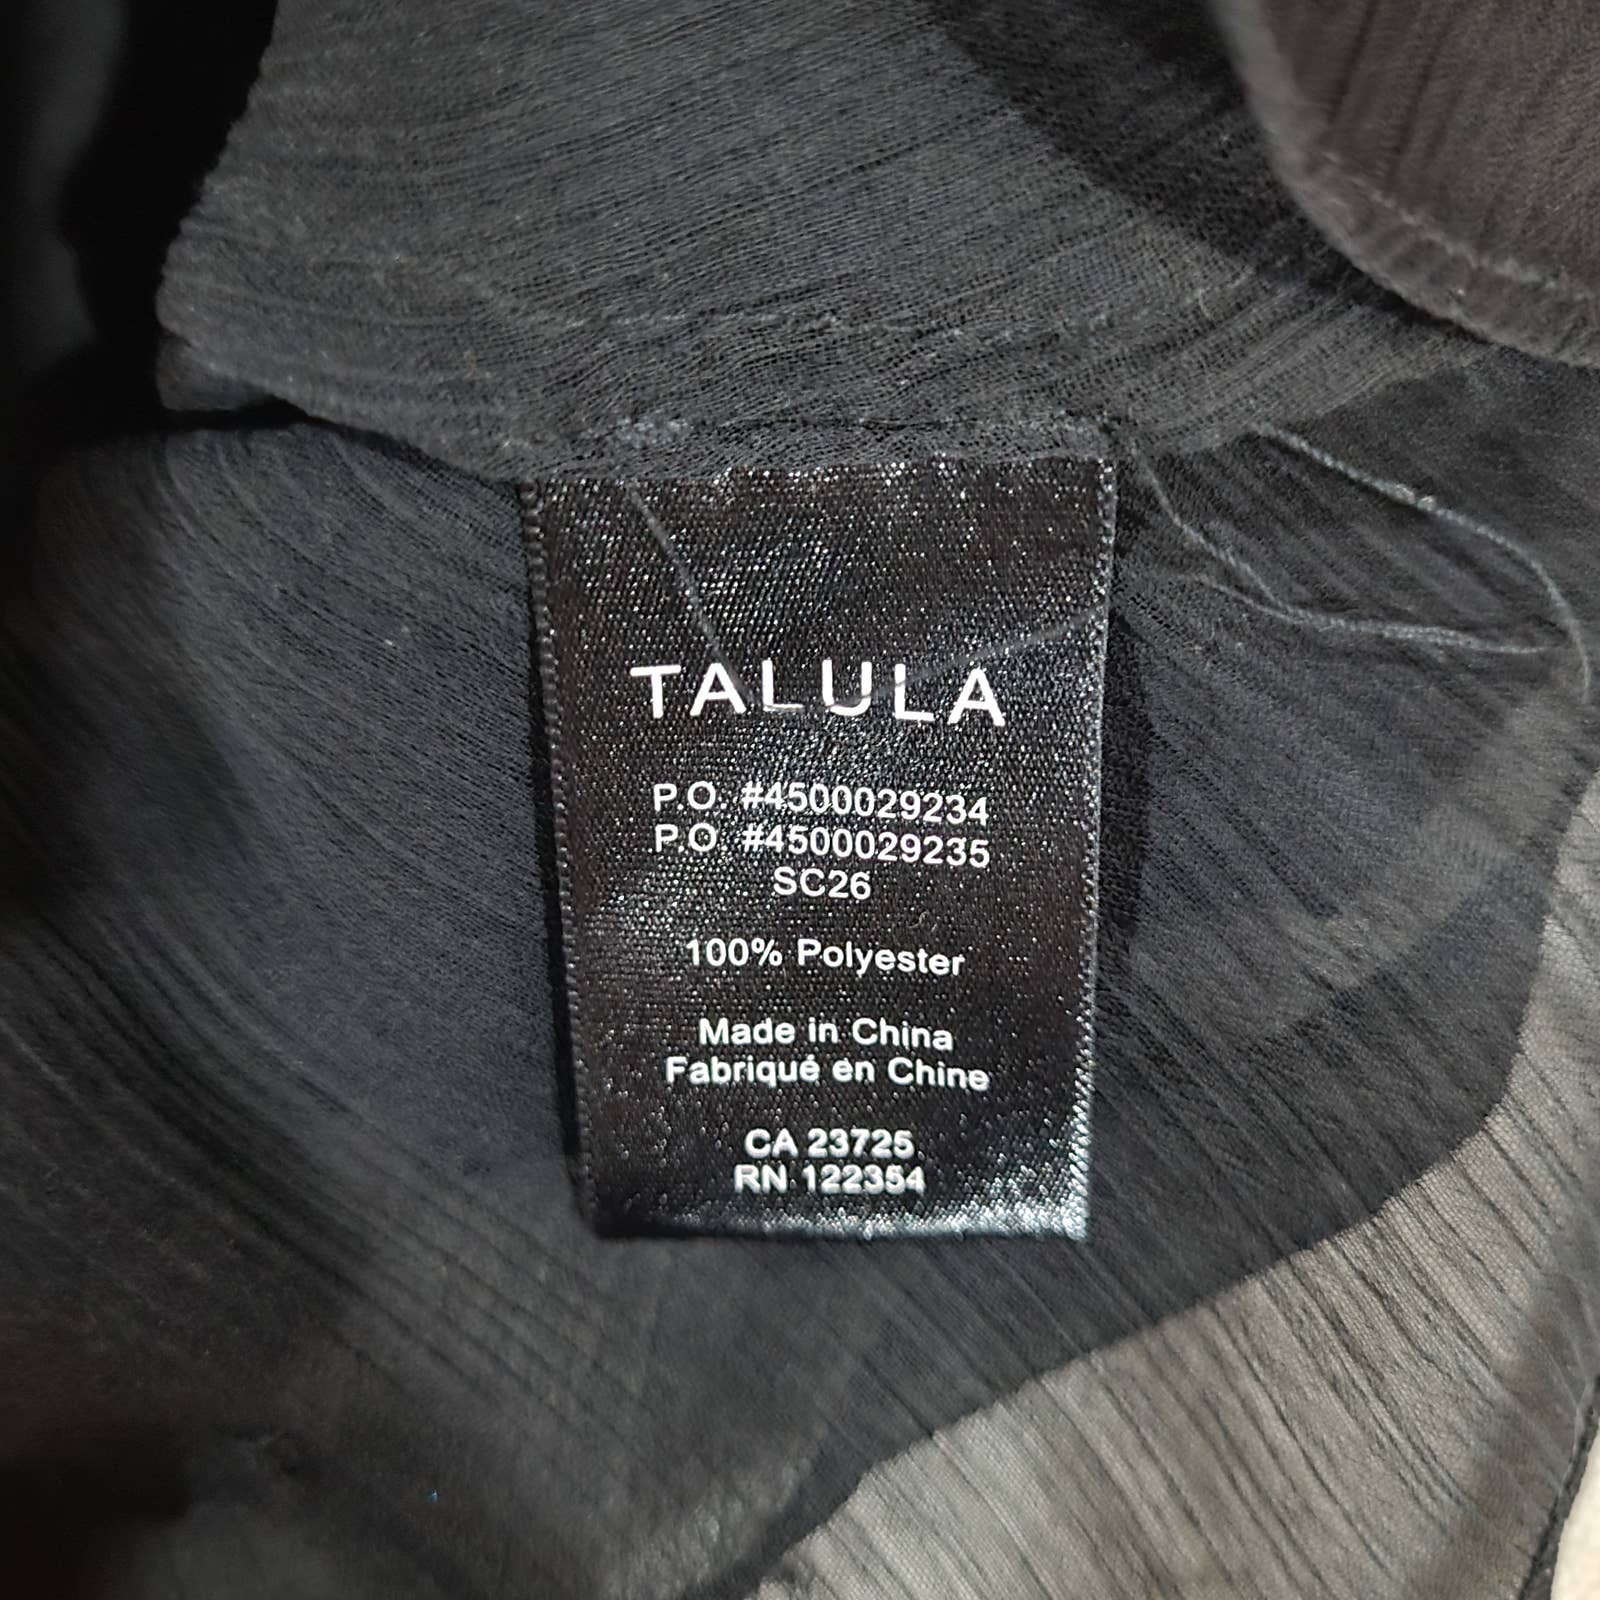 Talula Black Layered Chiffon Camisole Tank Top - Size SmallMarkita's ClosetTalula